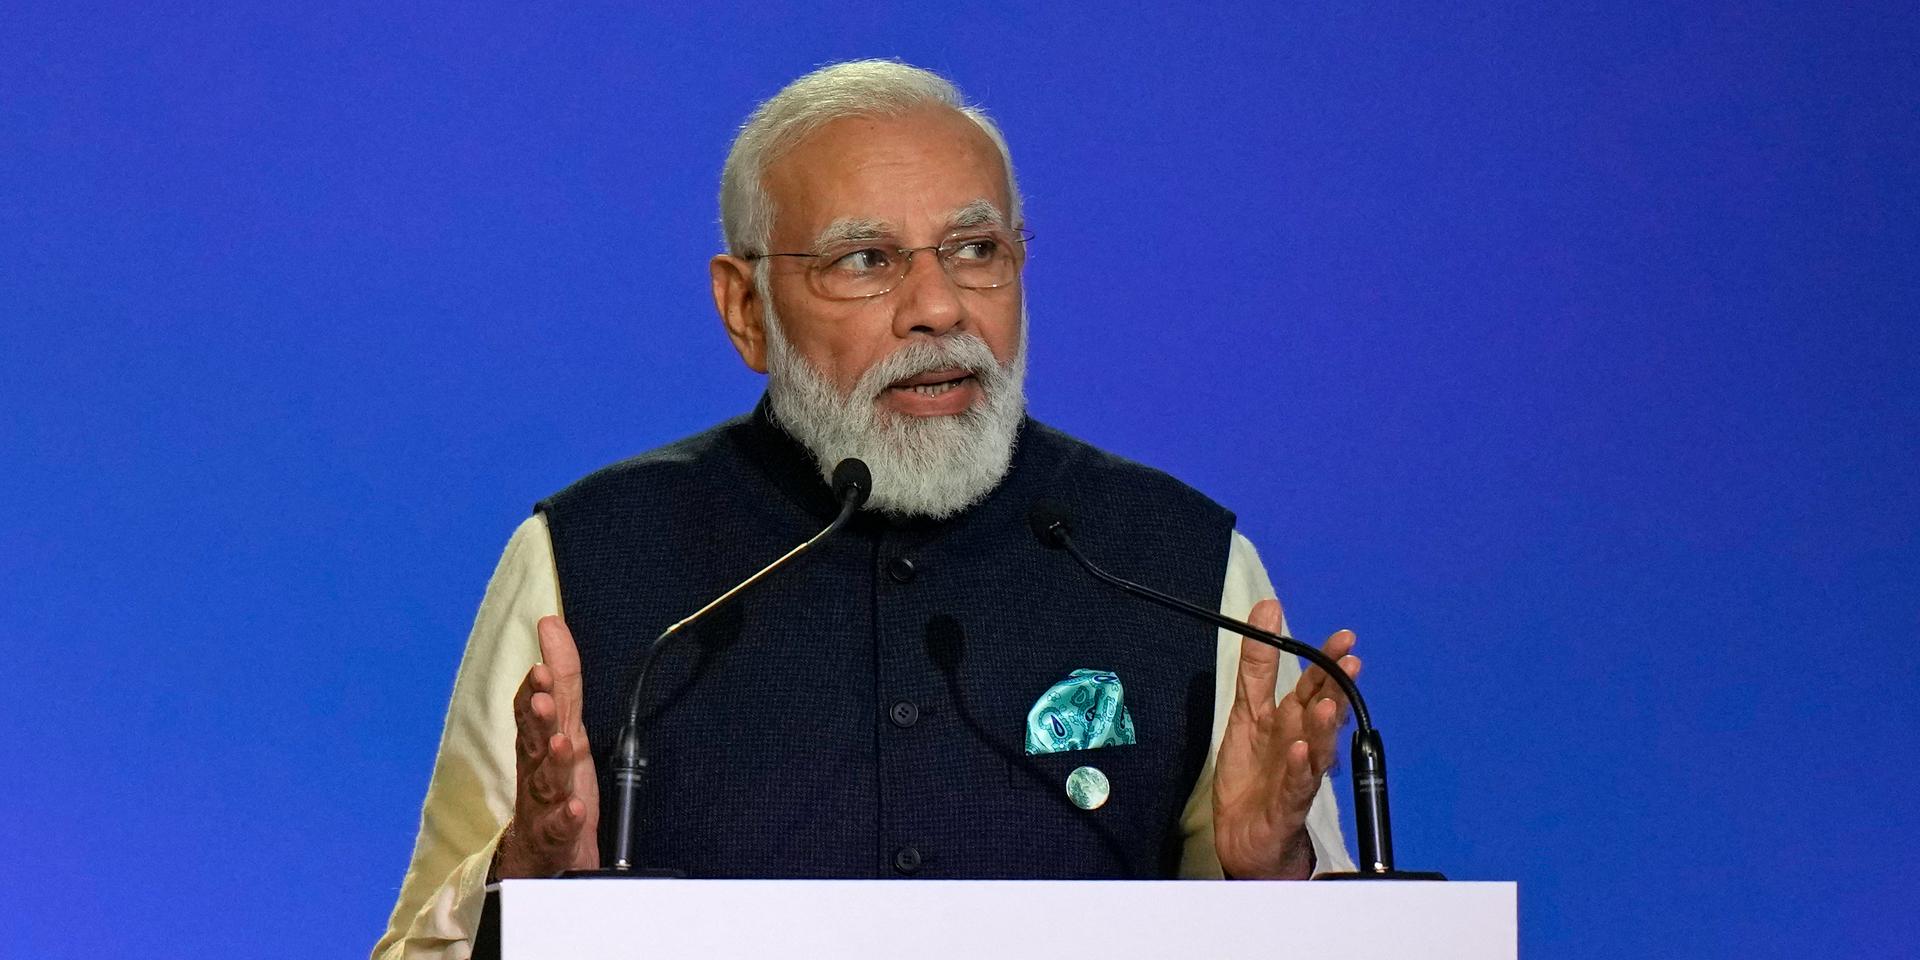 Indiens premiärminister Narendra Modi berättar att landet ska minska utsläppen till netto noll till 2070. Bild: AP Photo/Alastair Grant, Pool.